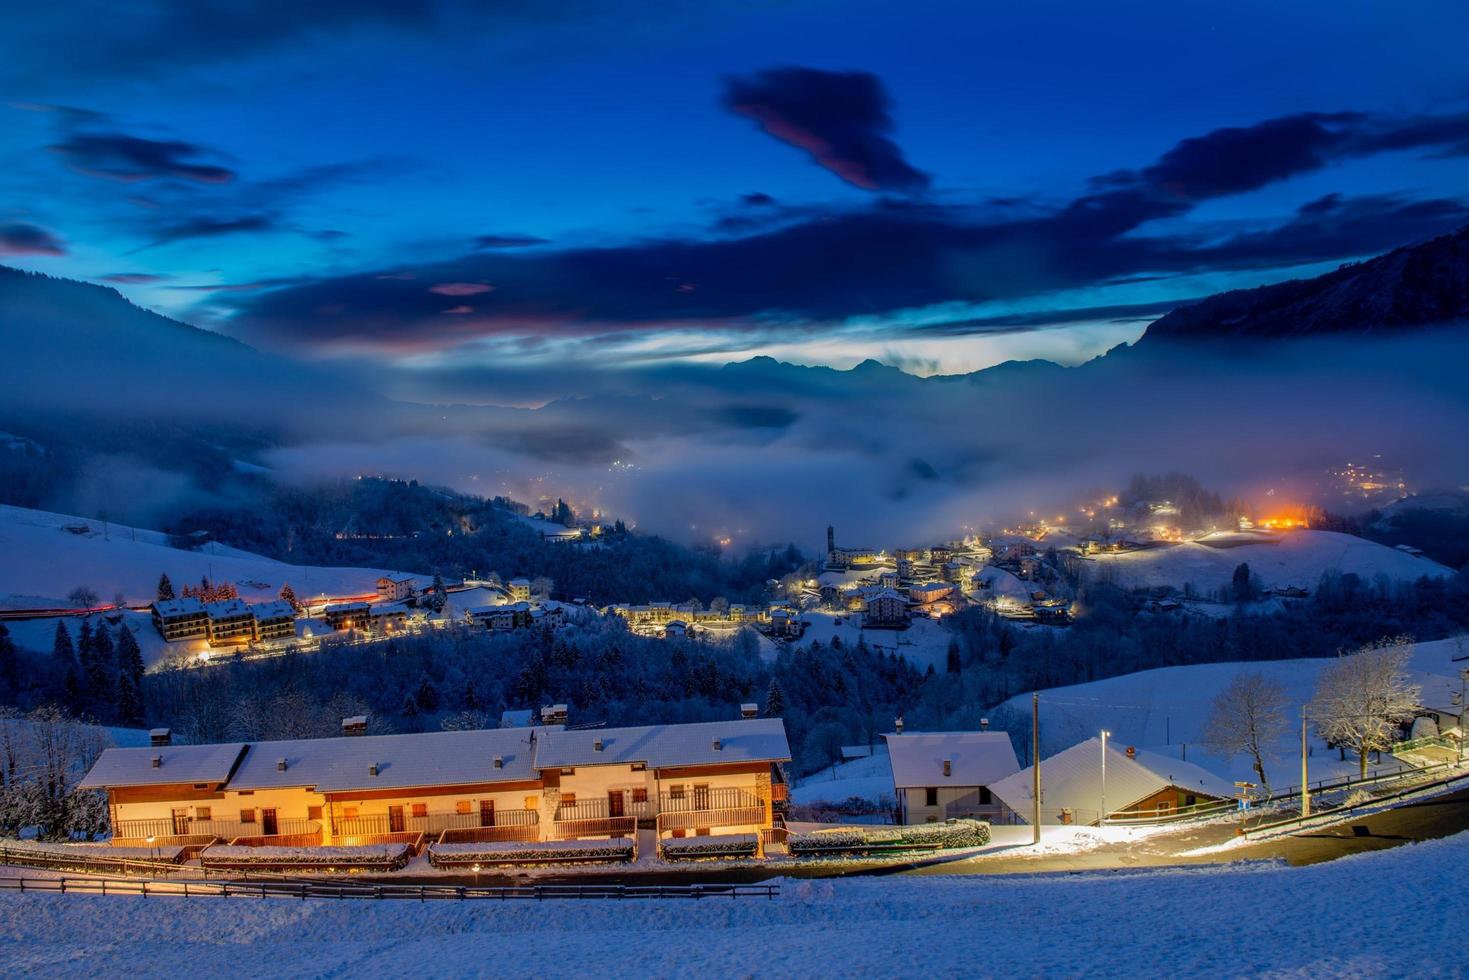 Snowy mountain village at sunset photo